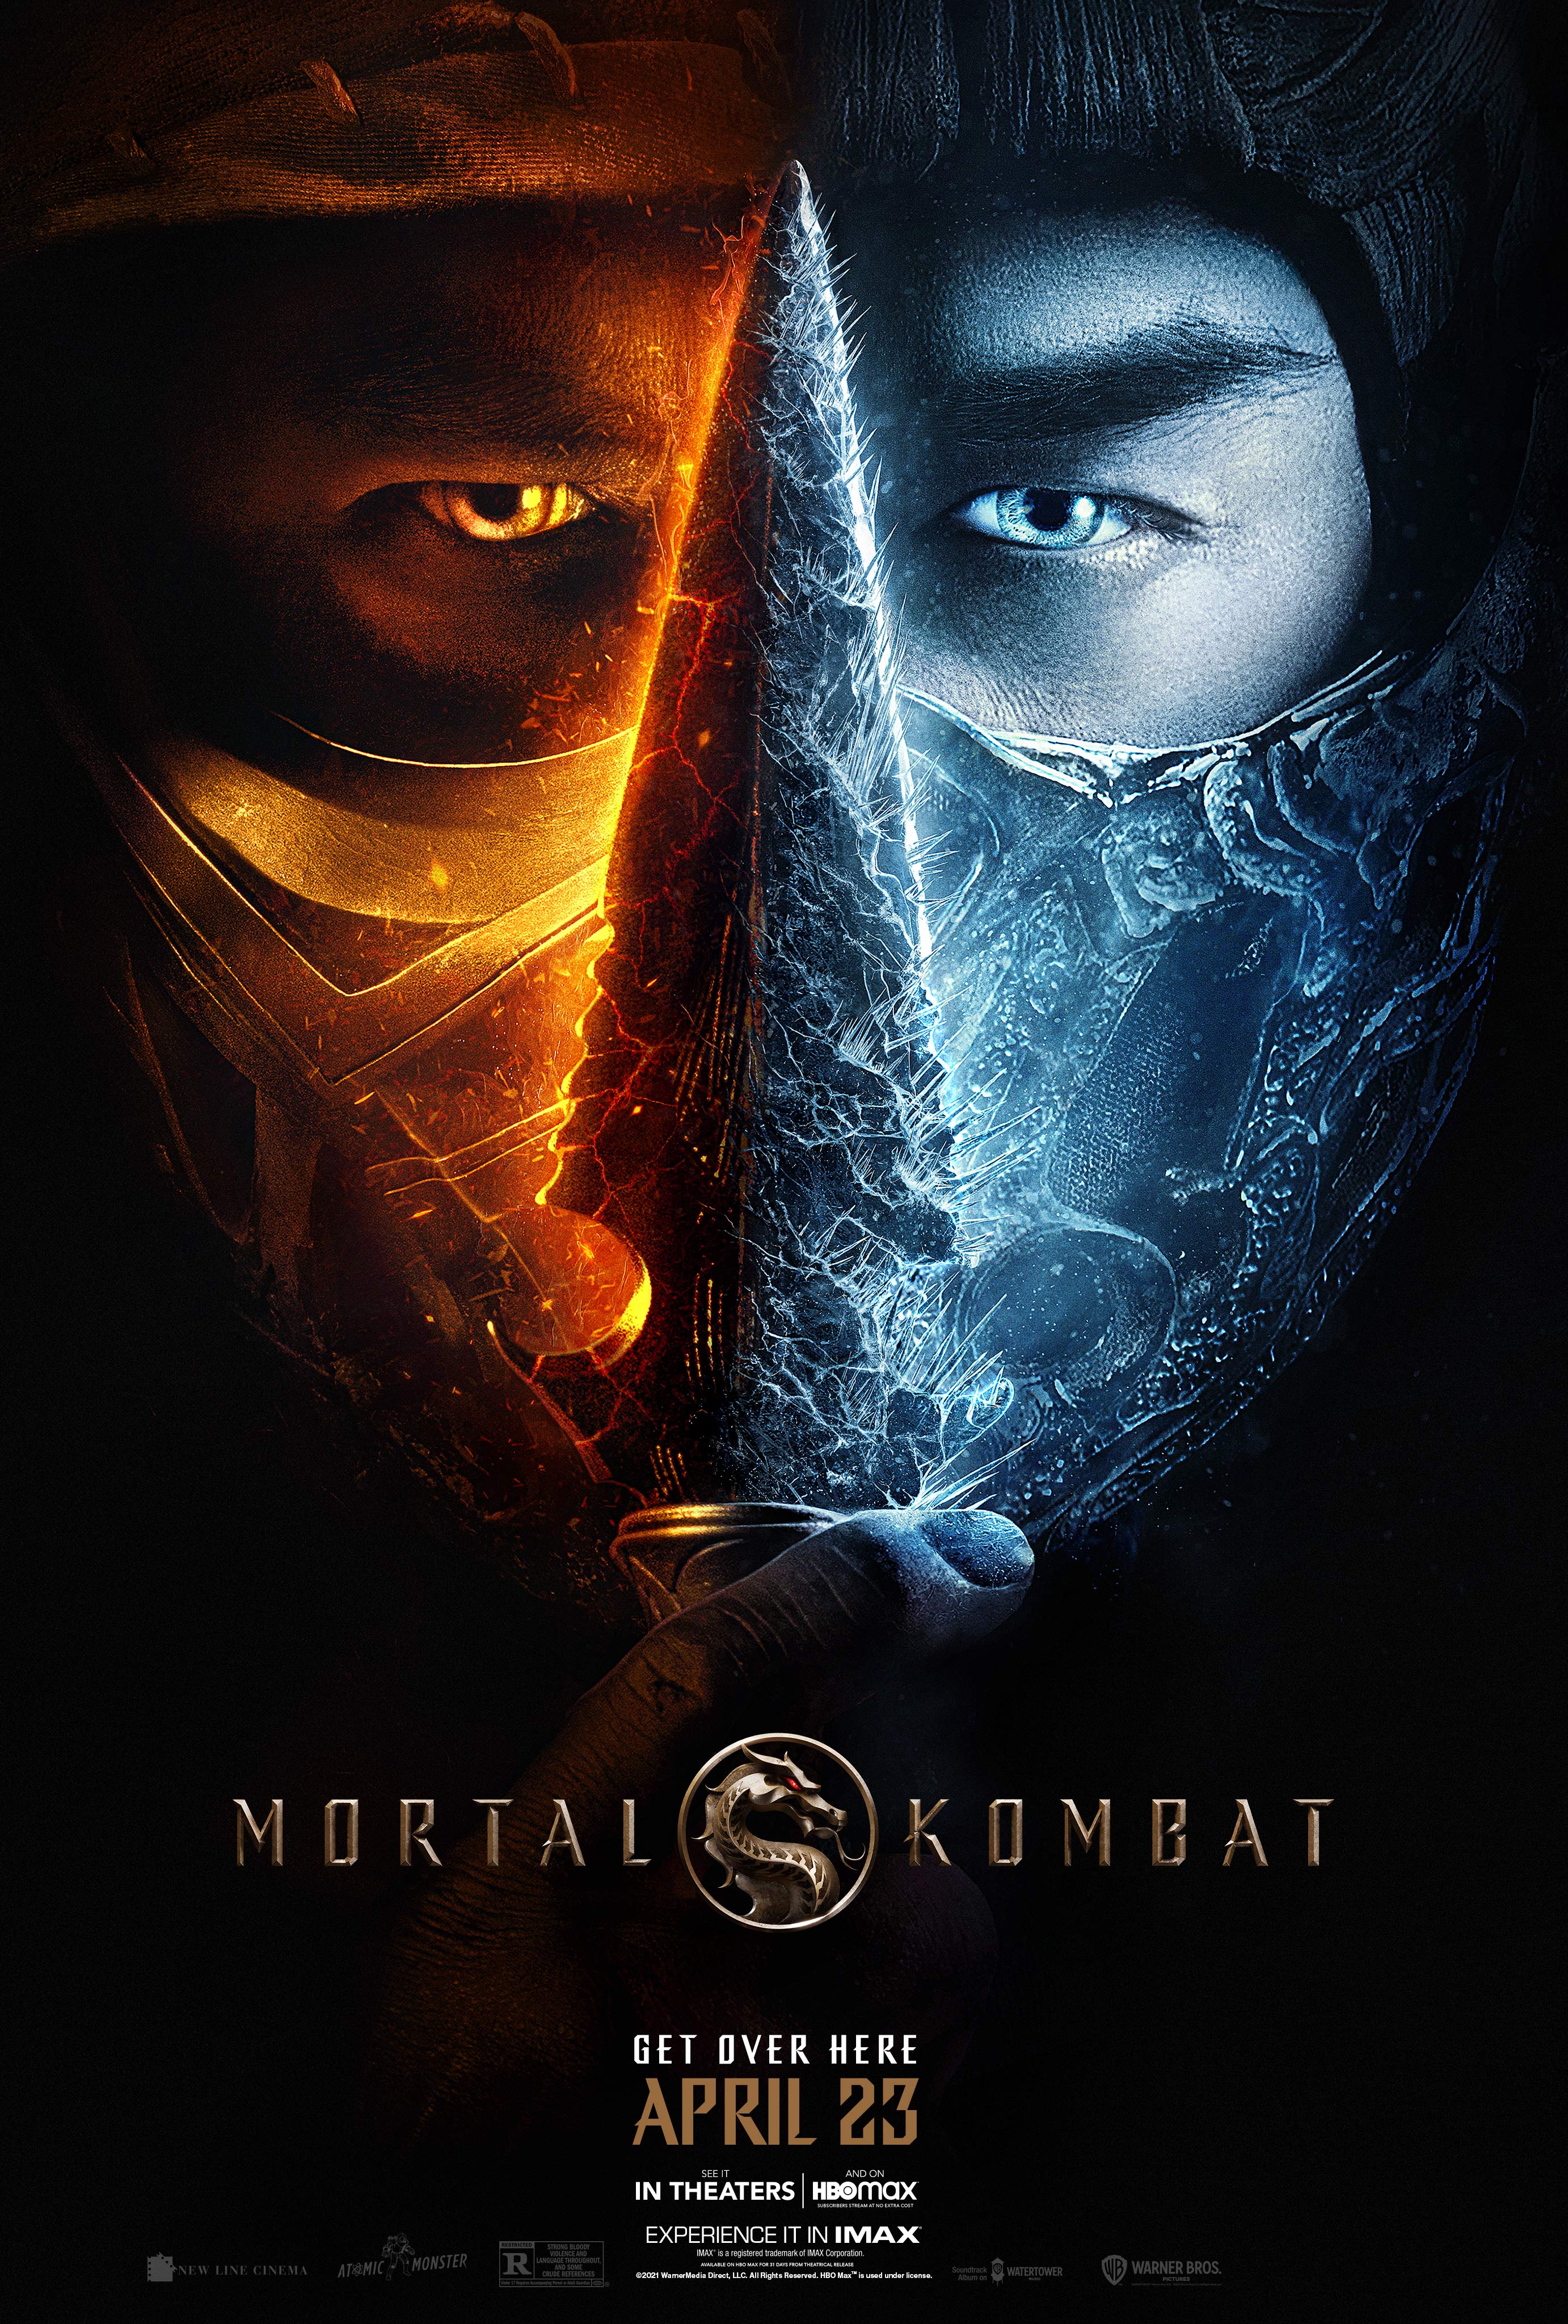 Stiahni si Filmy s titulkama Mortal Kombat (2021)[Webrip][1080p] = CSFD 76%